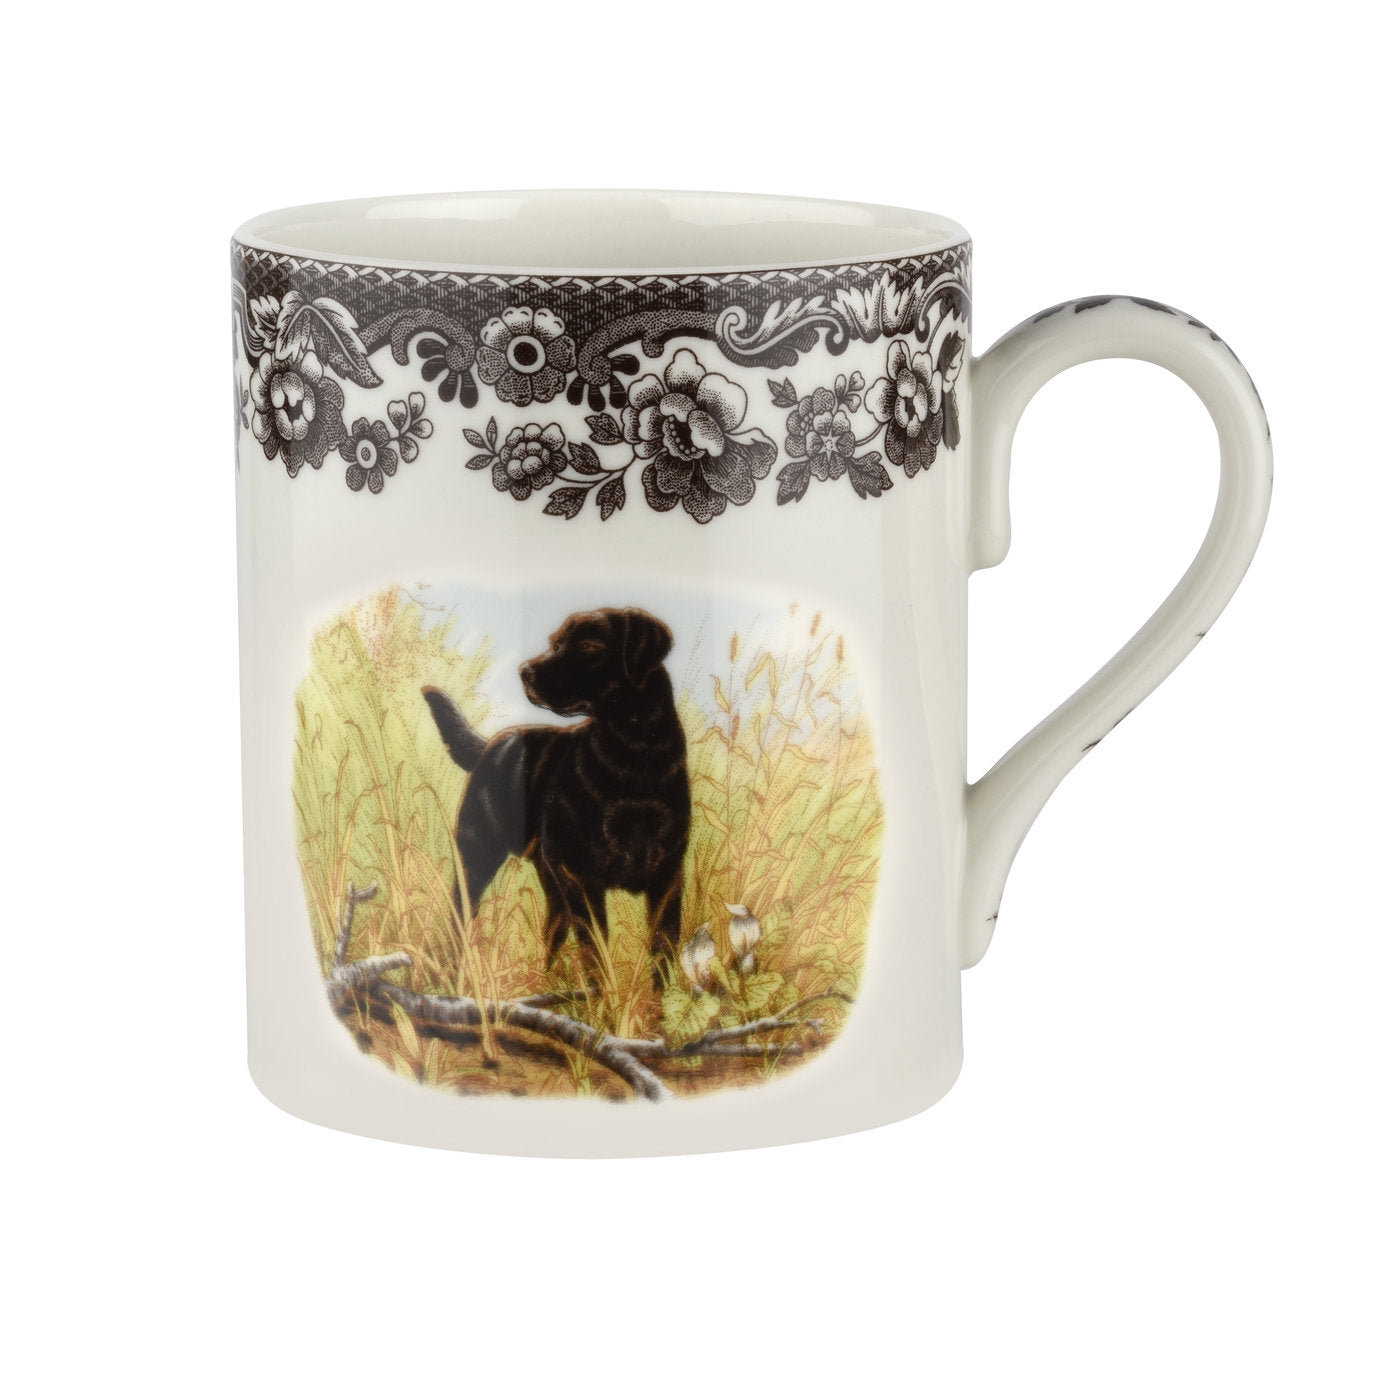 Spode Woodland Mug, Black Labrador Retriever